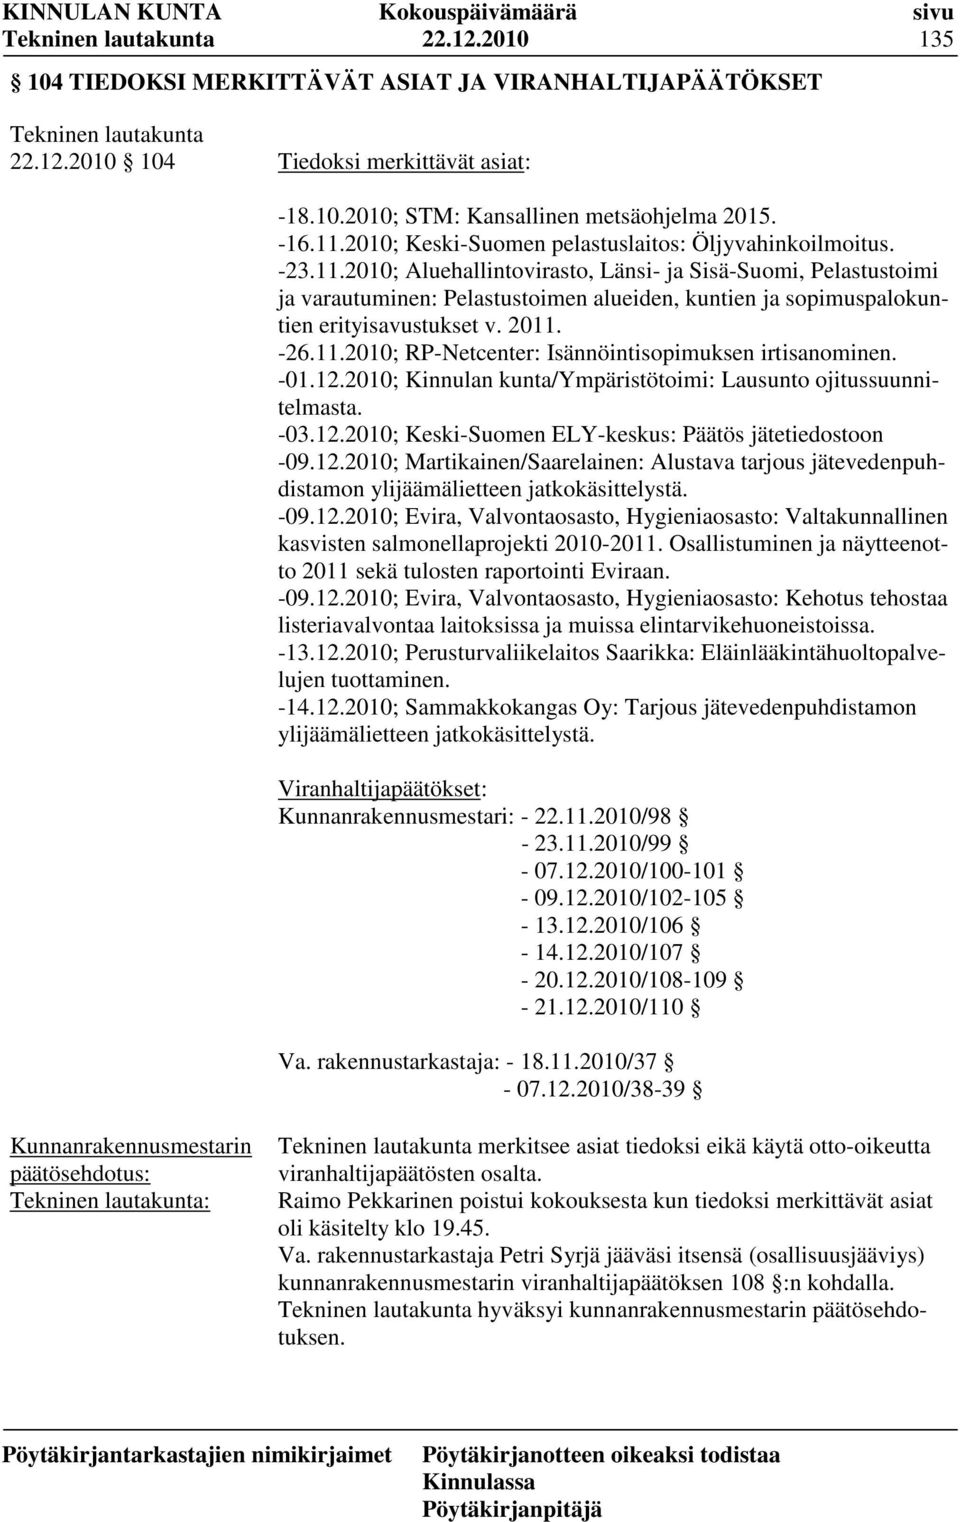 2010; Aluehallintovirasto, Länsi- ja Sisä-Suomi, Pelastustoimi ja varautuminen: Pelastustoimen alueiden, kuntien ja sopimuspalokuntien erityisavustukset v. 2011.